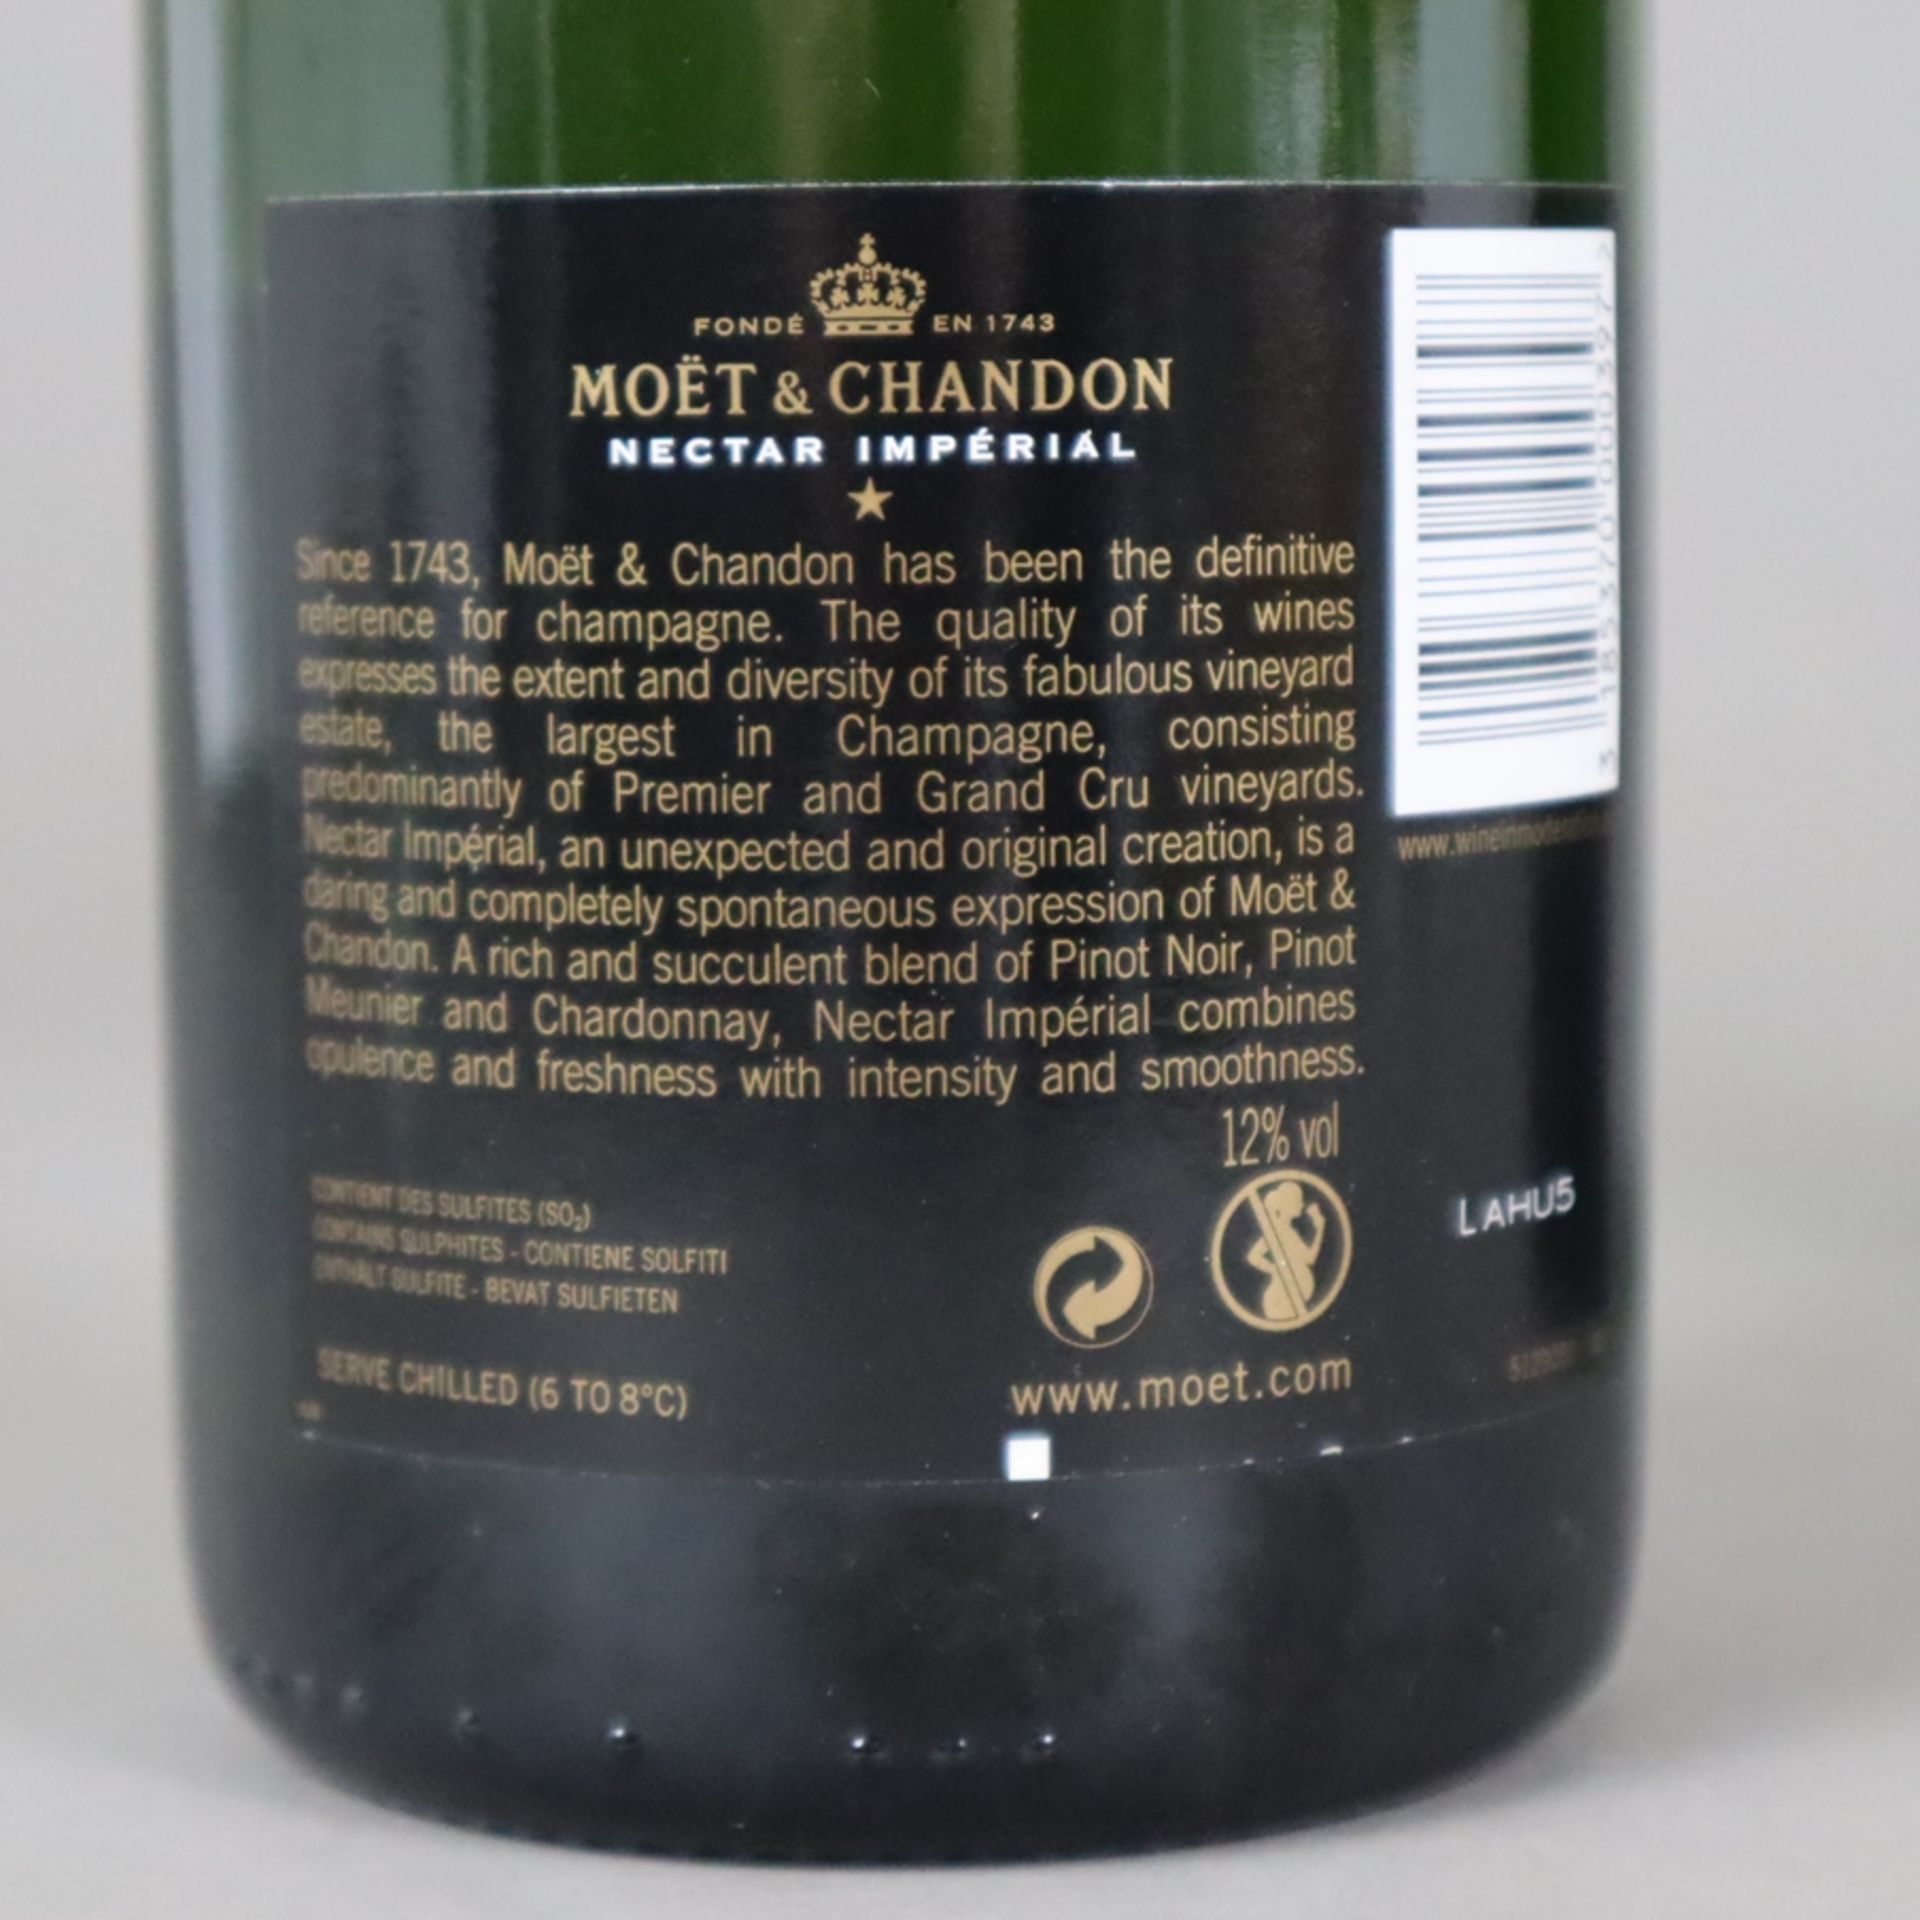 Champagner-Konvolut - 2 Flaschen, Moët & Chandon, Nectar Impérial, je 0,75 Liter - Image 4 of 4